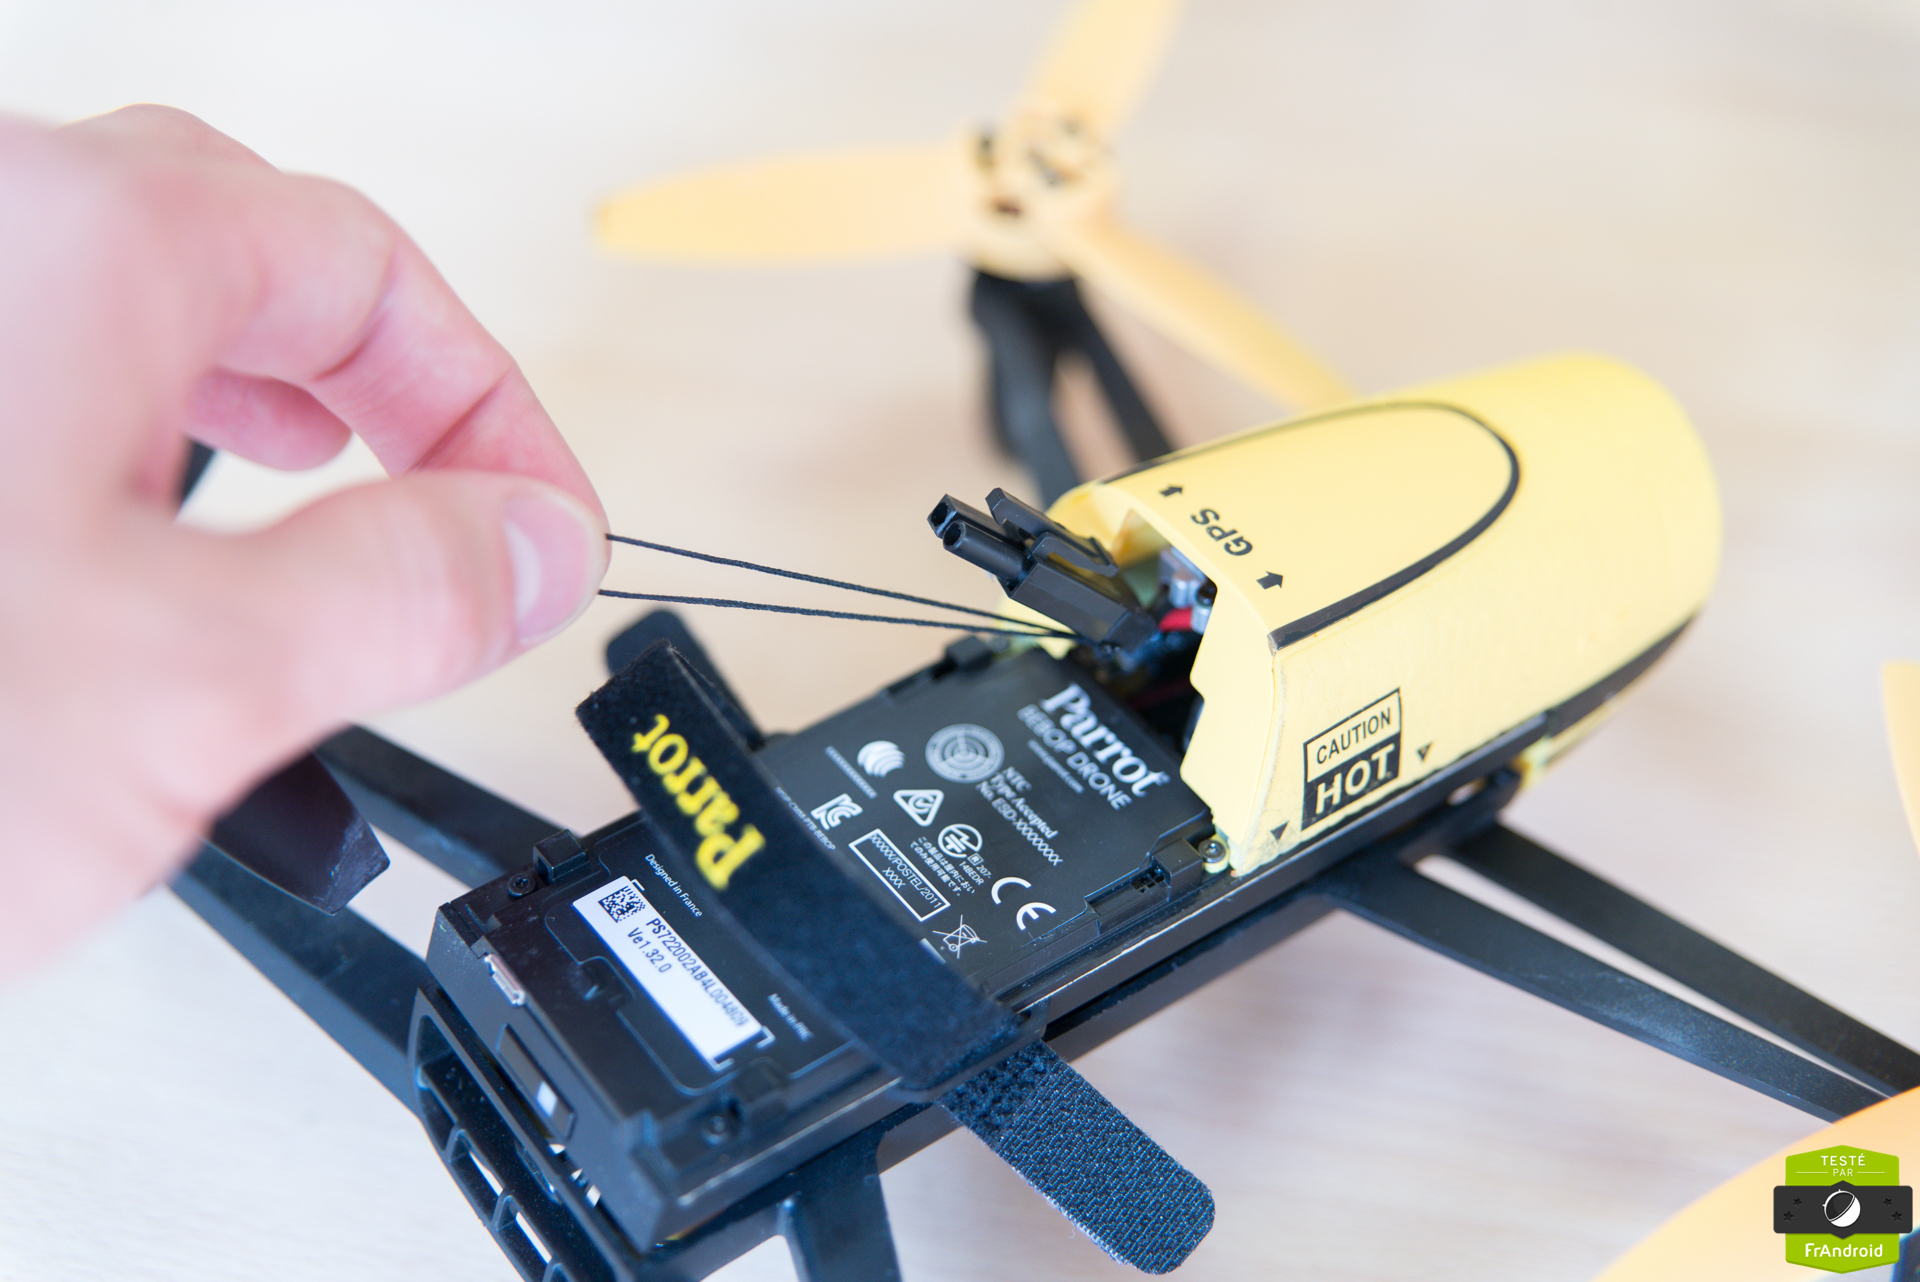 Les drones Parrot sont très faciles à détourner, selon des chercheurs